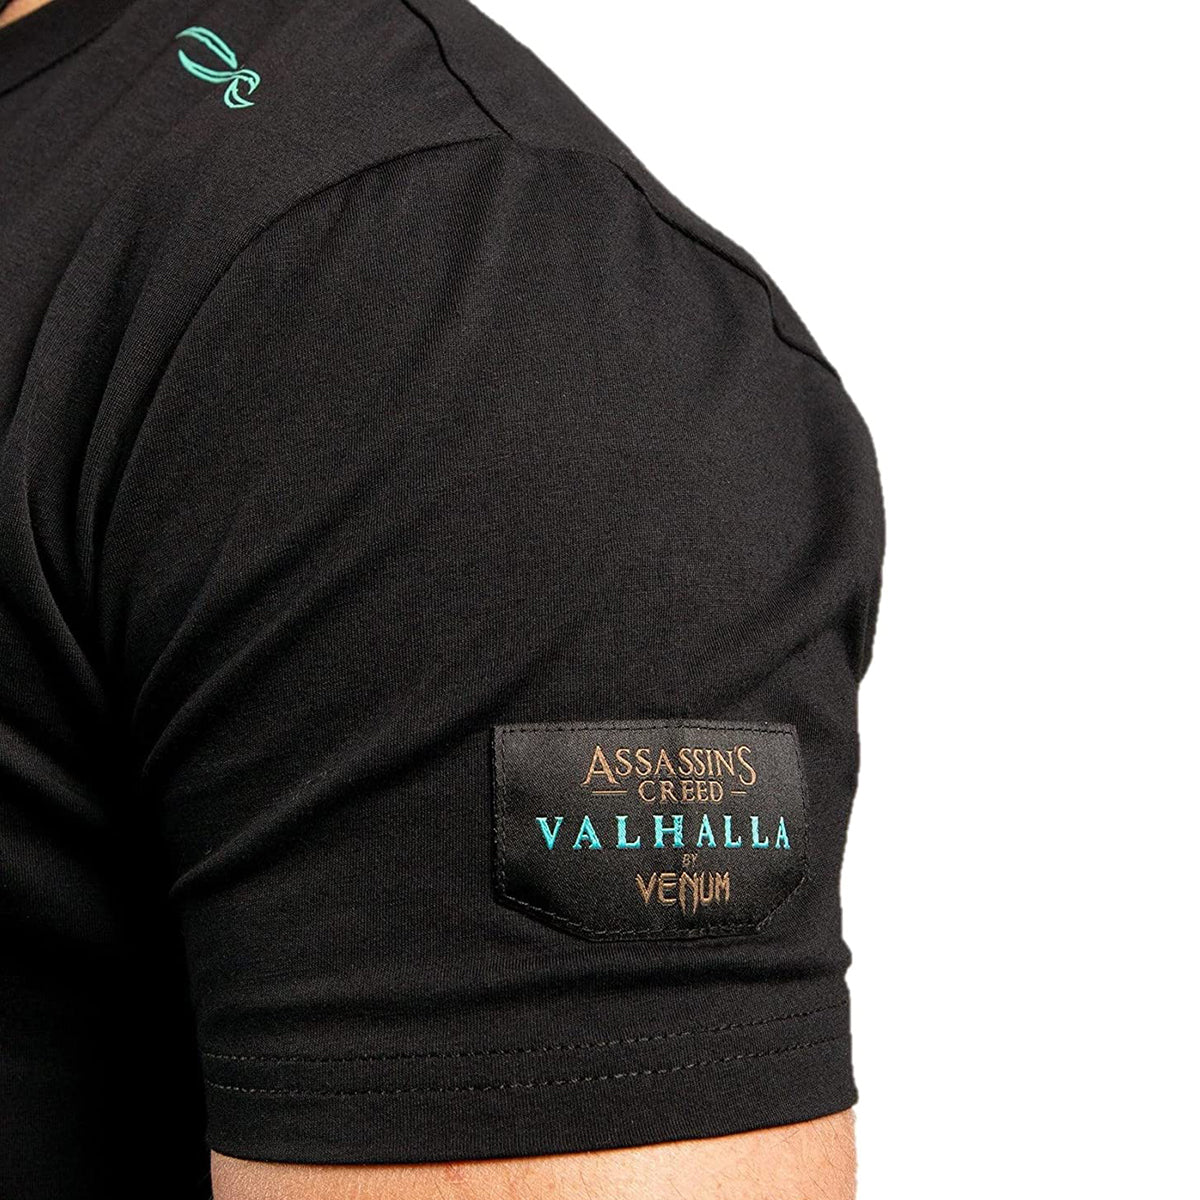 Venum Assassin's Creed T-Shirt - Black/Blue Venum